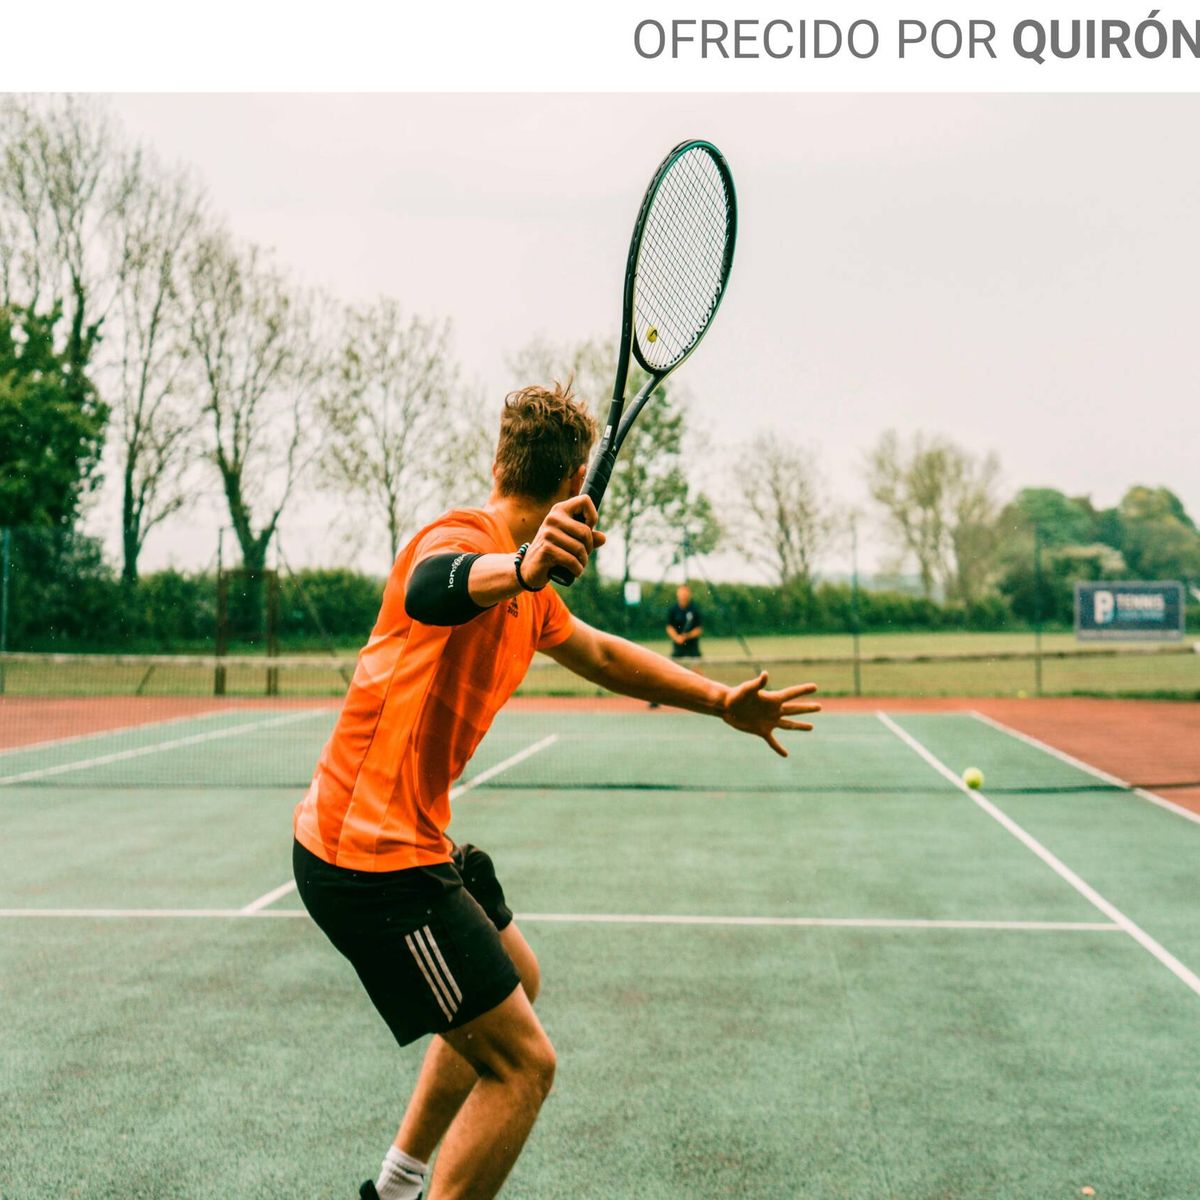 Jugar al tenis, uno de los deportes más beneficiosos  LUNAySOL, Revista  familiar de sociedad y estilo de vida BCBG